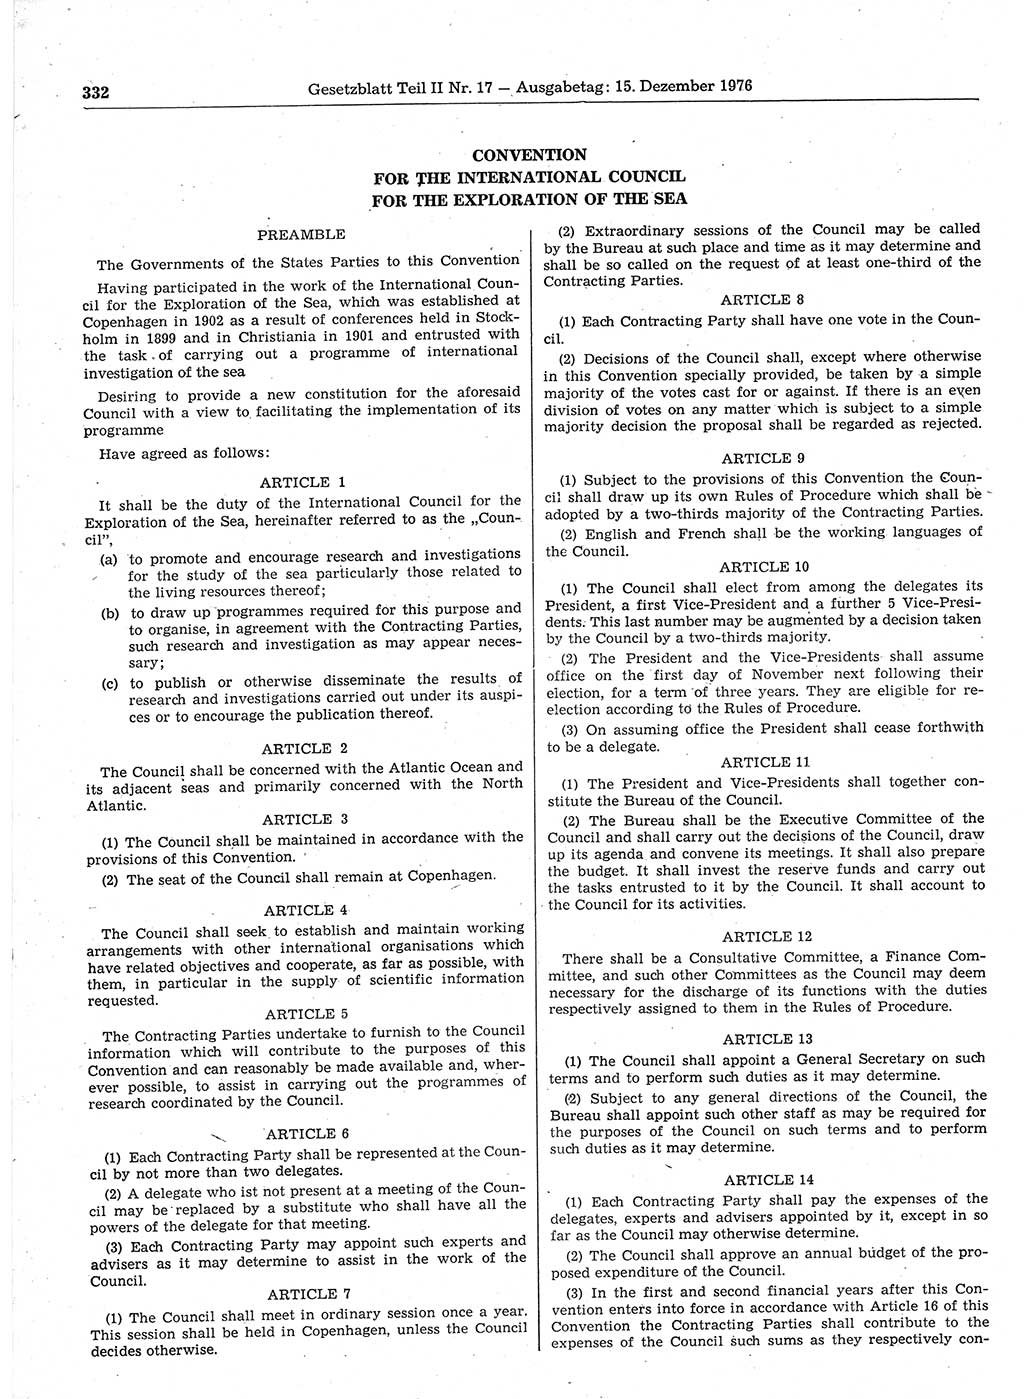 Gesetzblatt (GBl.) der Deutschen Demokratischen Republik (DDR) Teil ⅠⅠ 1976, Seite 332 (GBl. DDR ⅠⅠ 1976, S. 332)